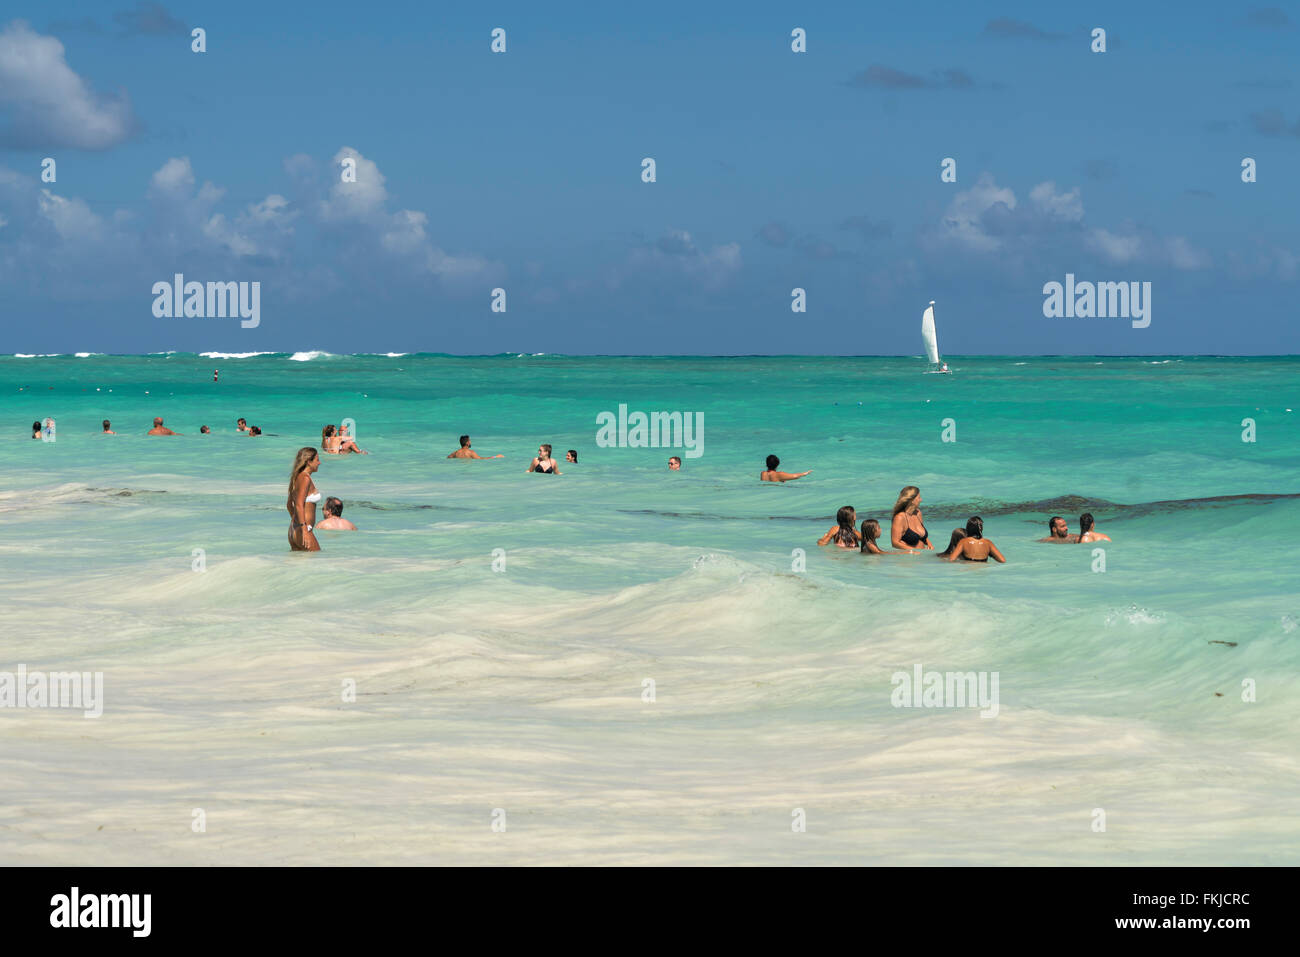 Los turistas bañarse en el océano, Playa Bávaro, Punta Cana, República Dominicana, El Caribe, América, Foto de stock